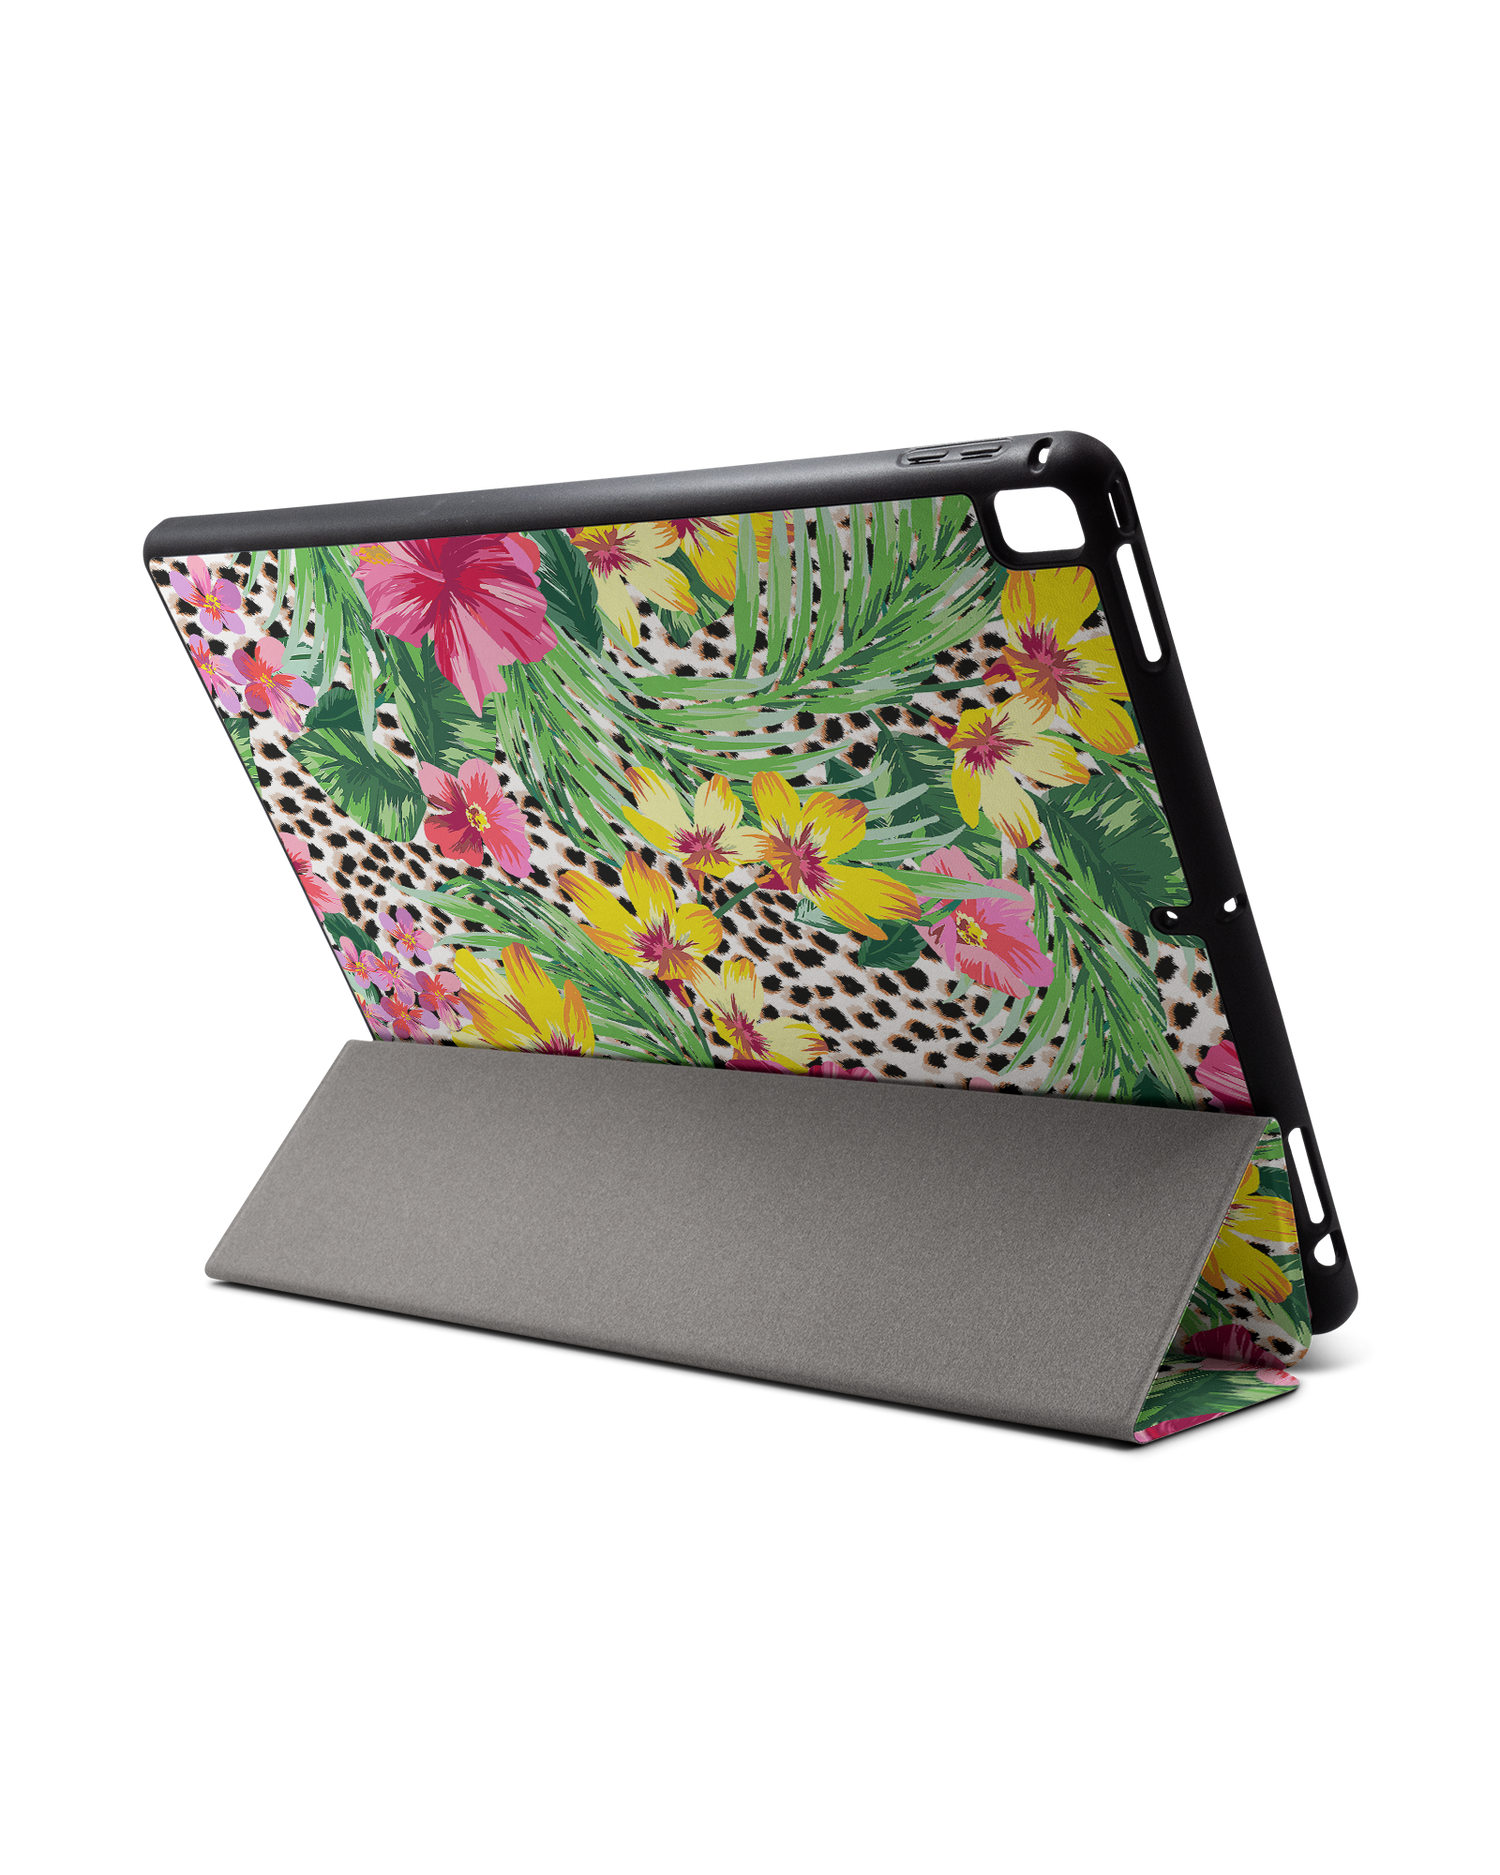 Tropical Cheetah iPad Hülle mit Stifthalter für Apple iPad Pro 2 12.9'' (2017): Aufgestellt im Querformat von hinten